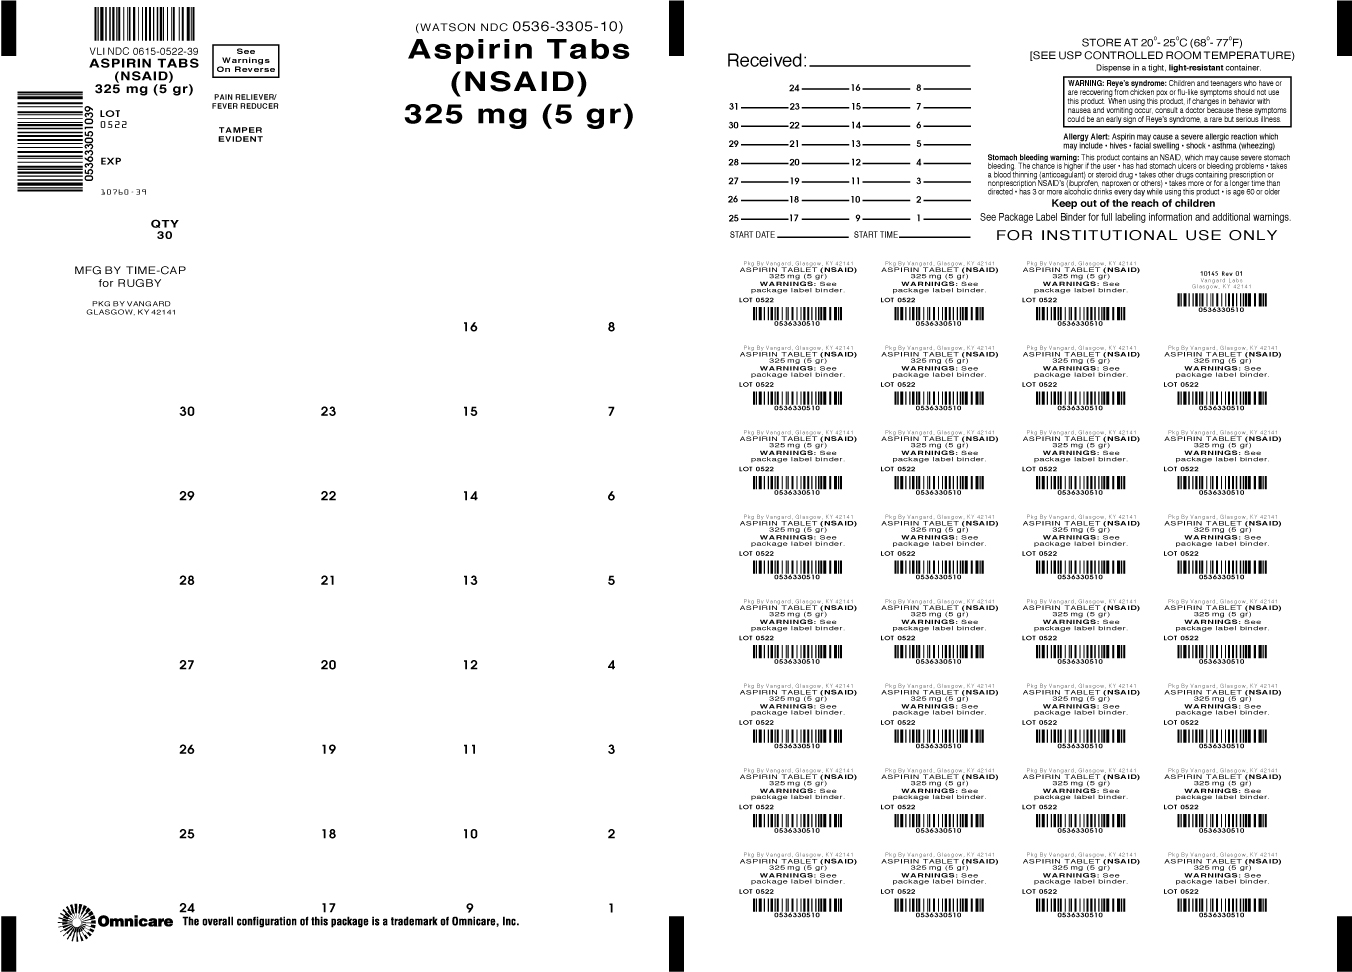 Principal Display Panel-Aspririn Tabs (NSAID) 325mg (5gr)